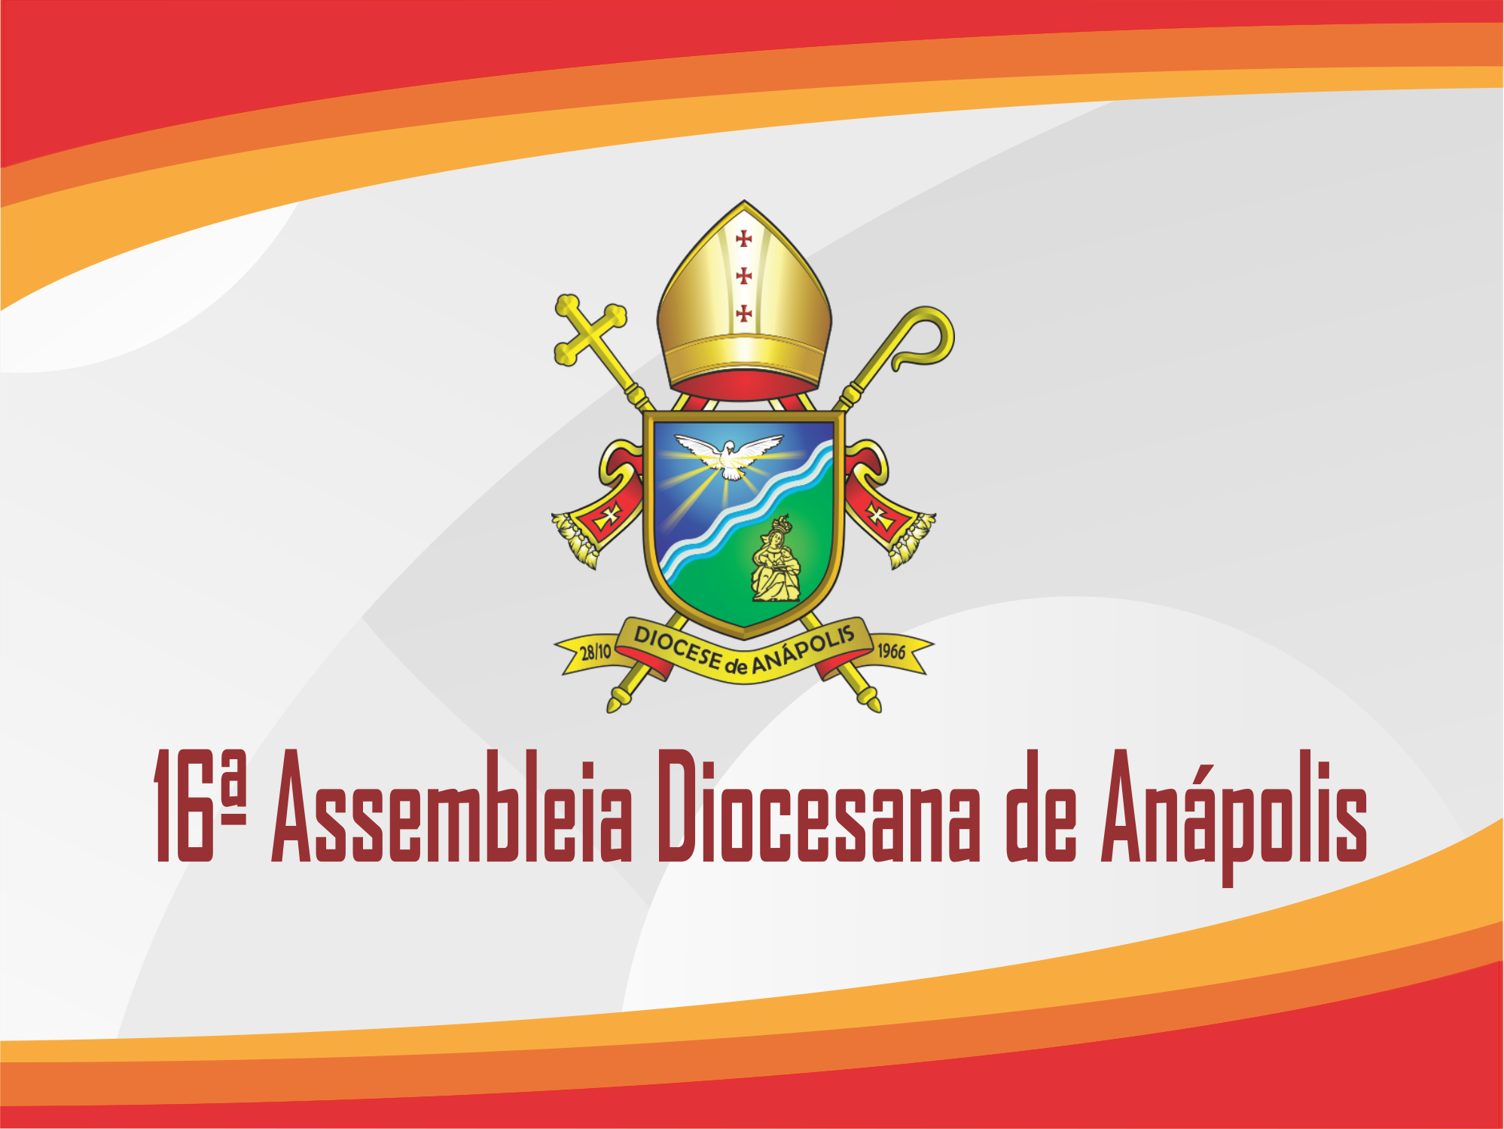 Disponível para download slide apresentado na 16ª Assembleia diocesana